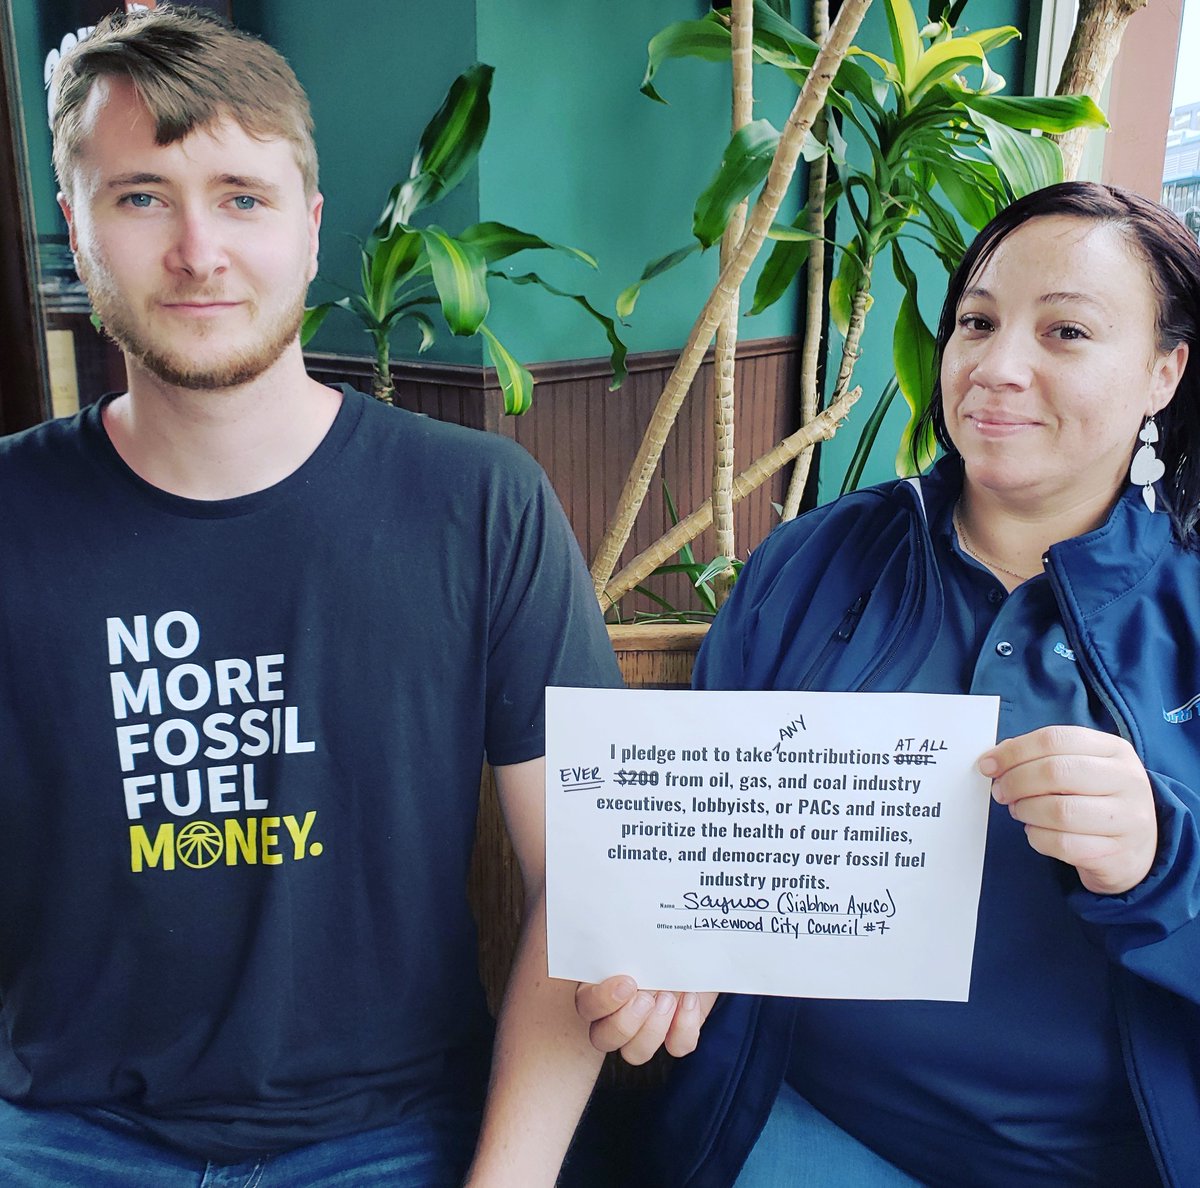 #nomorefossilfuels #nolng #zerofossilfuelmoney